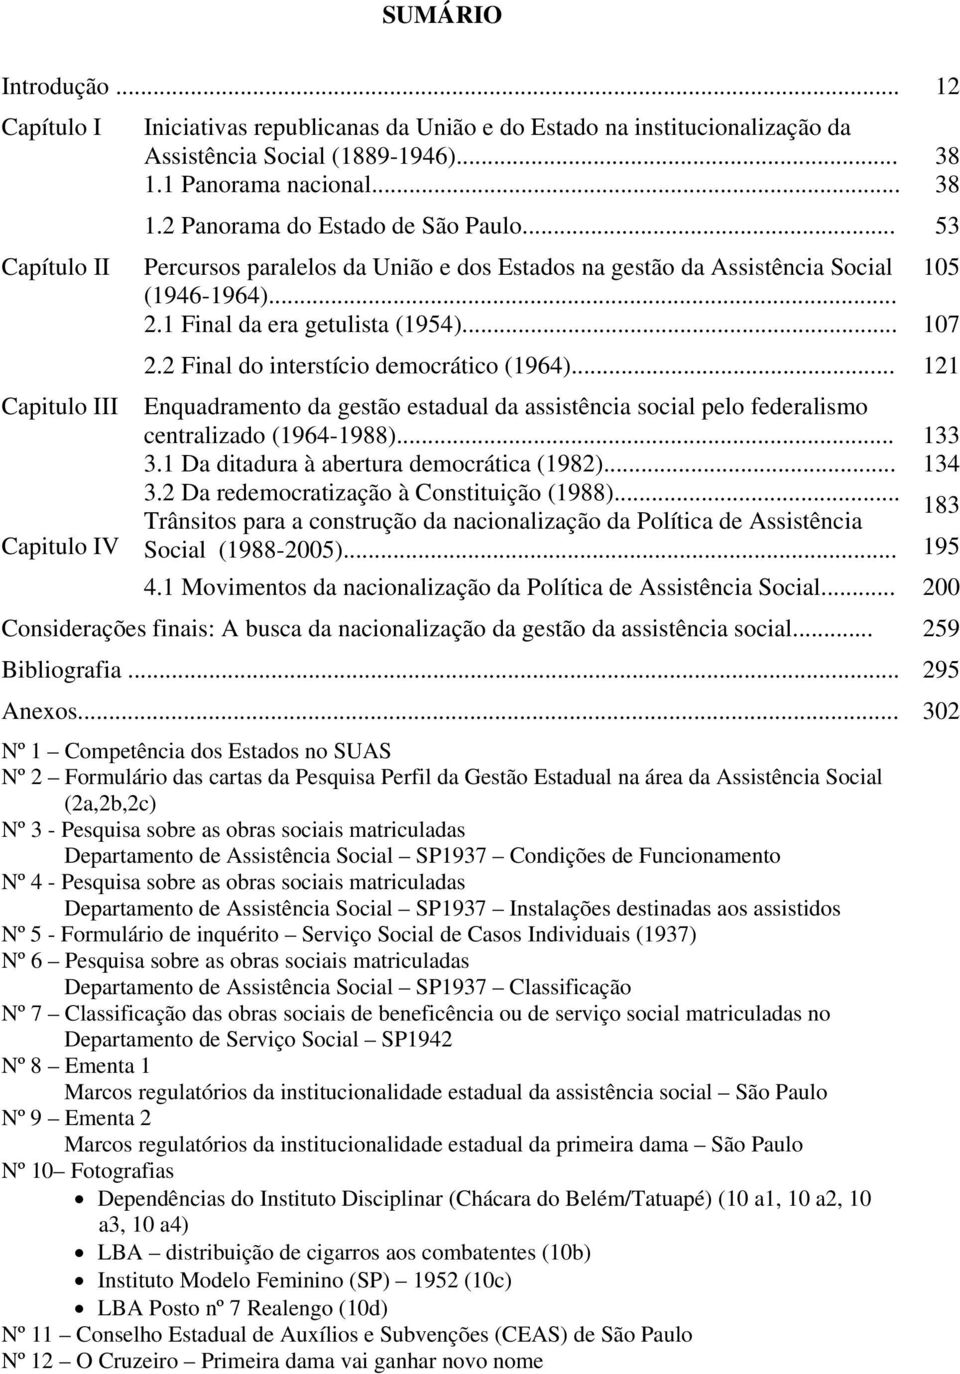 .. 121 Capitulo III Enquadramento da gestão estadual da assistência social pelo federalismo centralizado (1964-1988)... 3.1 Da ditadura à abertura democrática (1982)... 3.2 Da redemocratização à Constituição (1988).